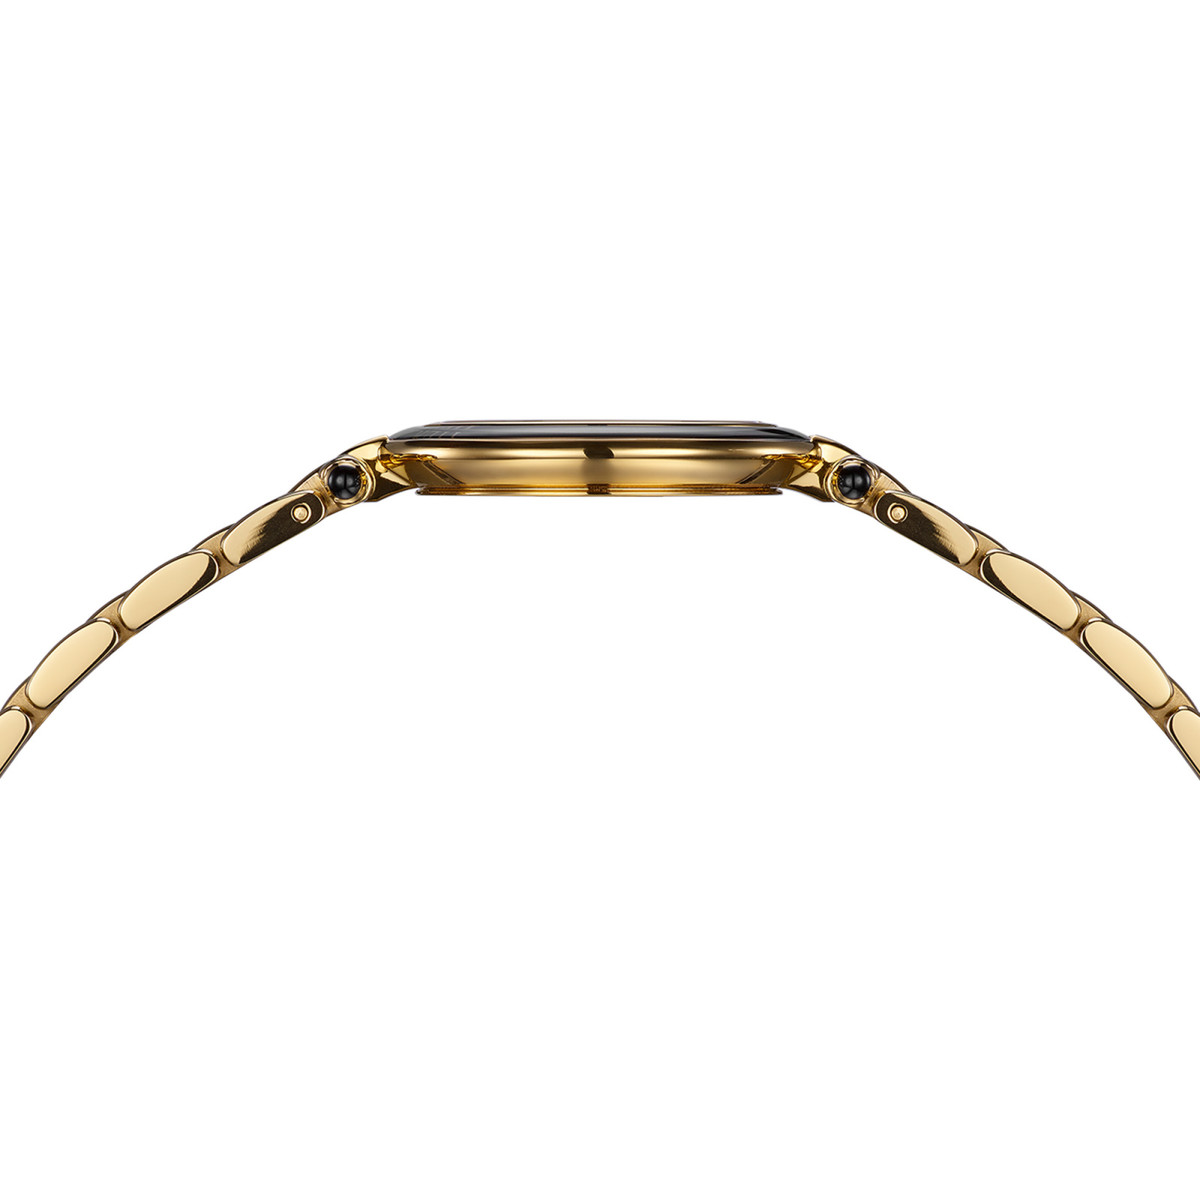 Montre BALMAIN tradition femme bracelet acier inoxydable or - vue 4